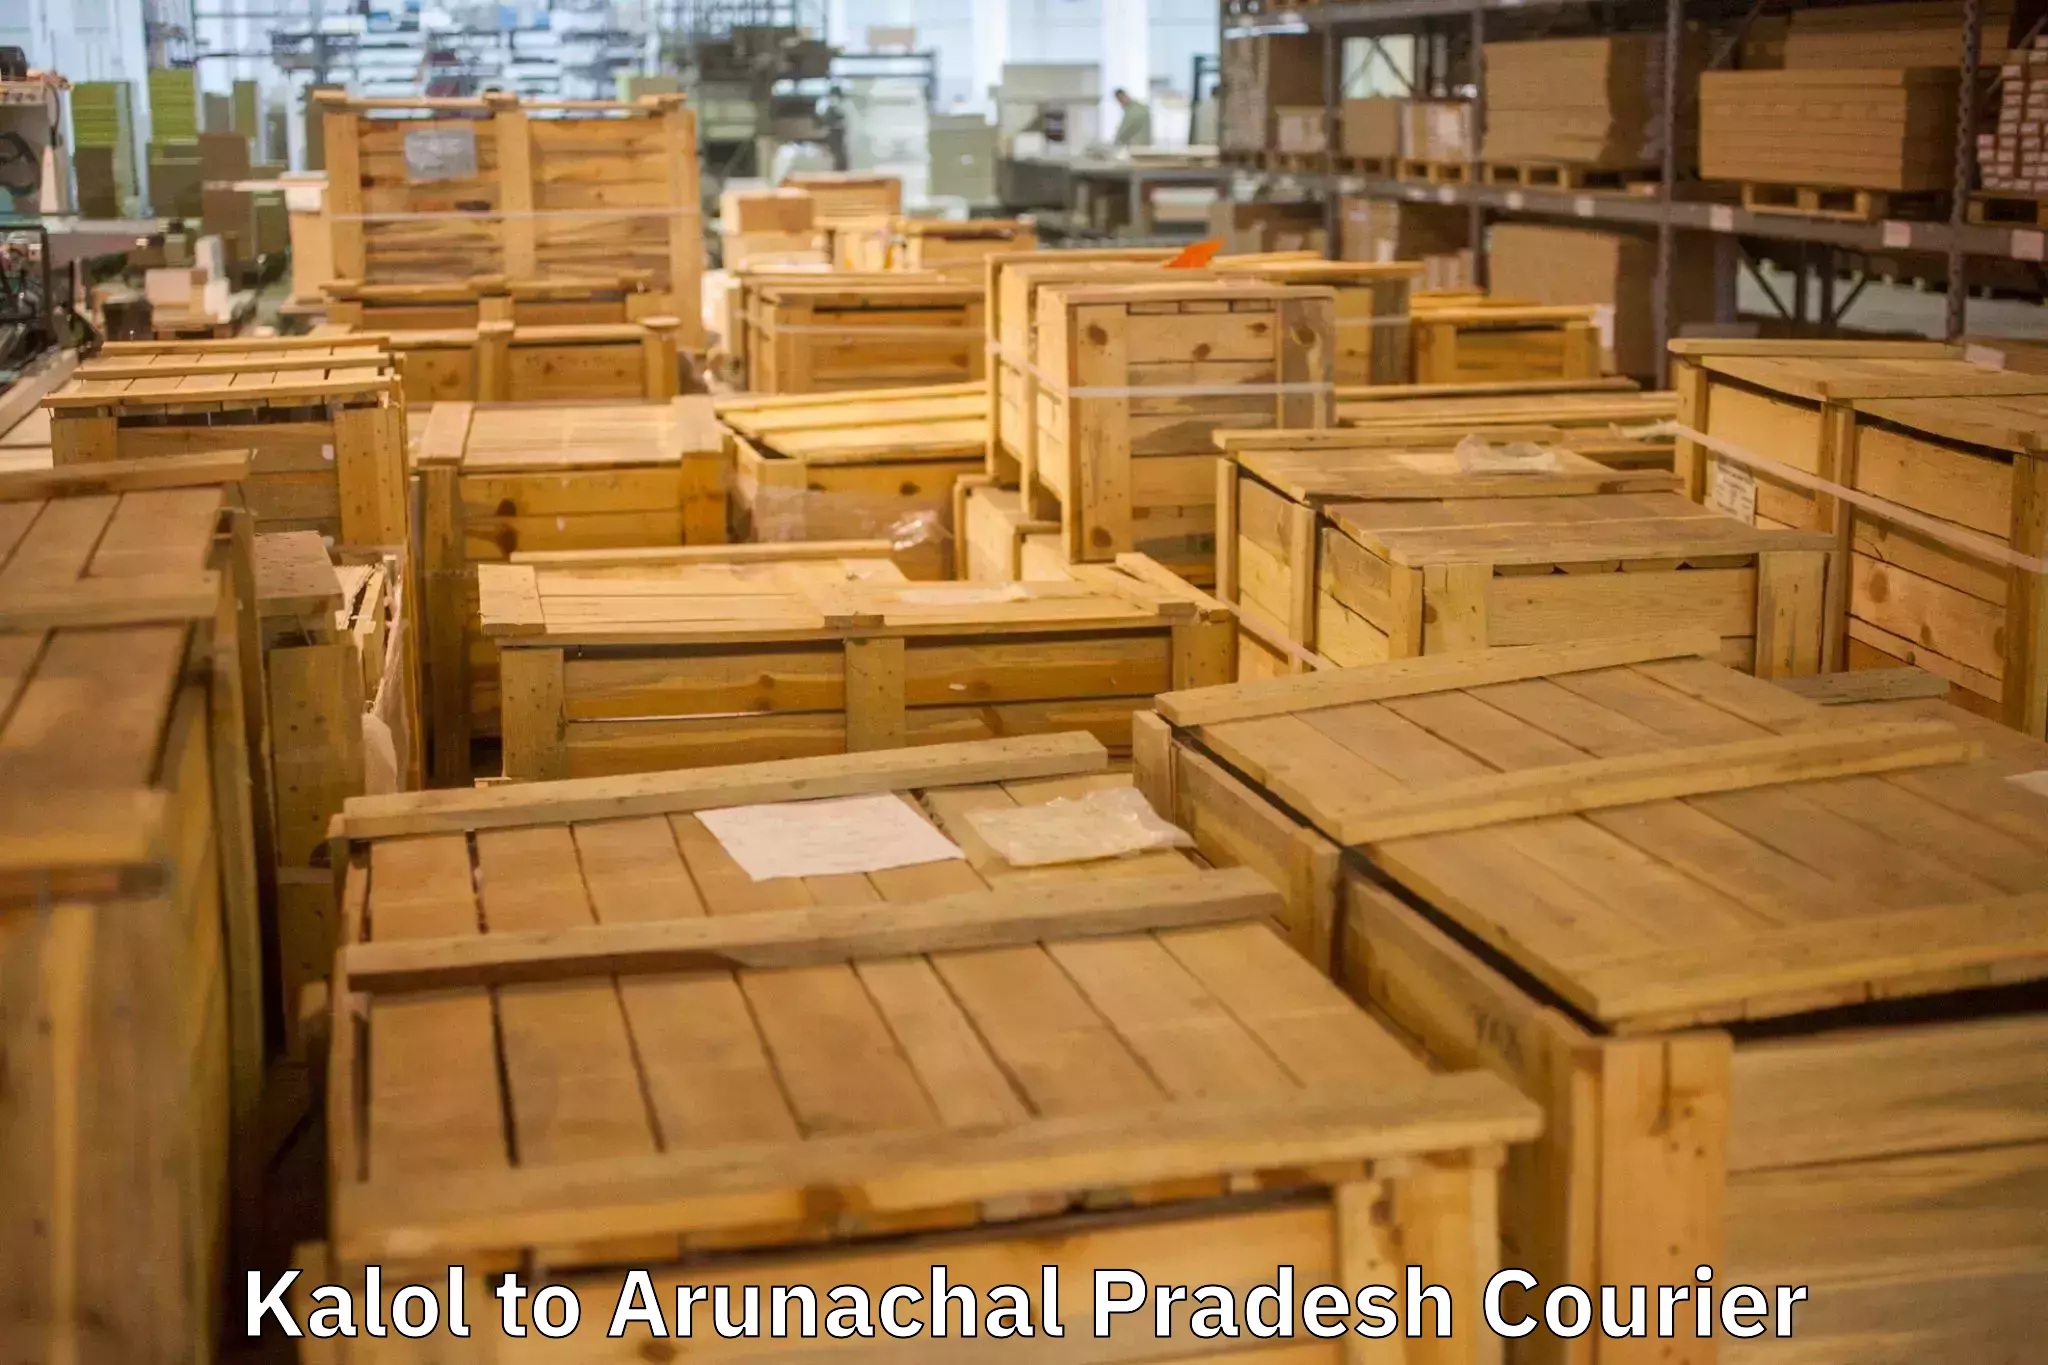 Furniture handling services Kalol to Arunachal Pradesh